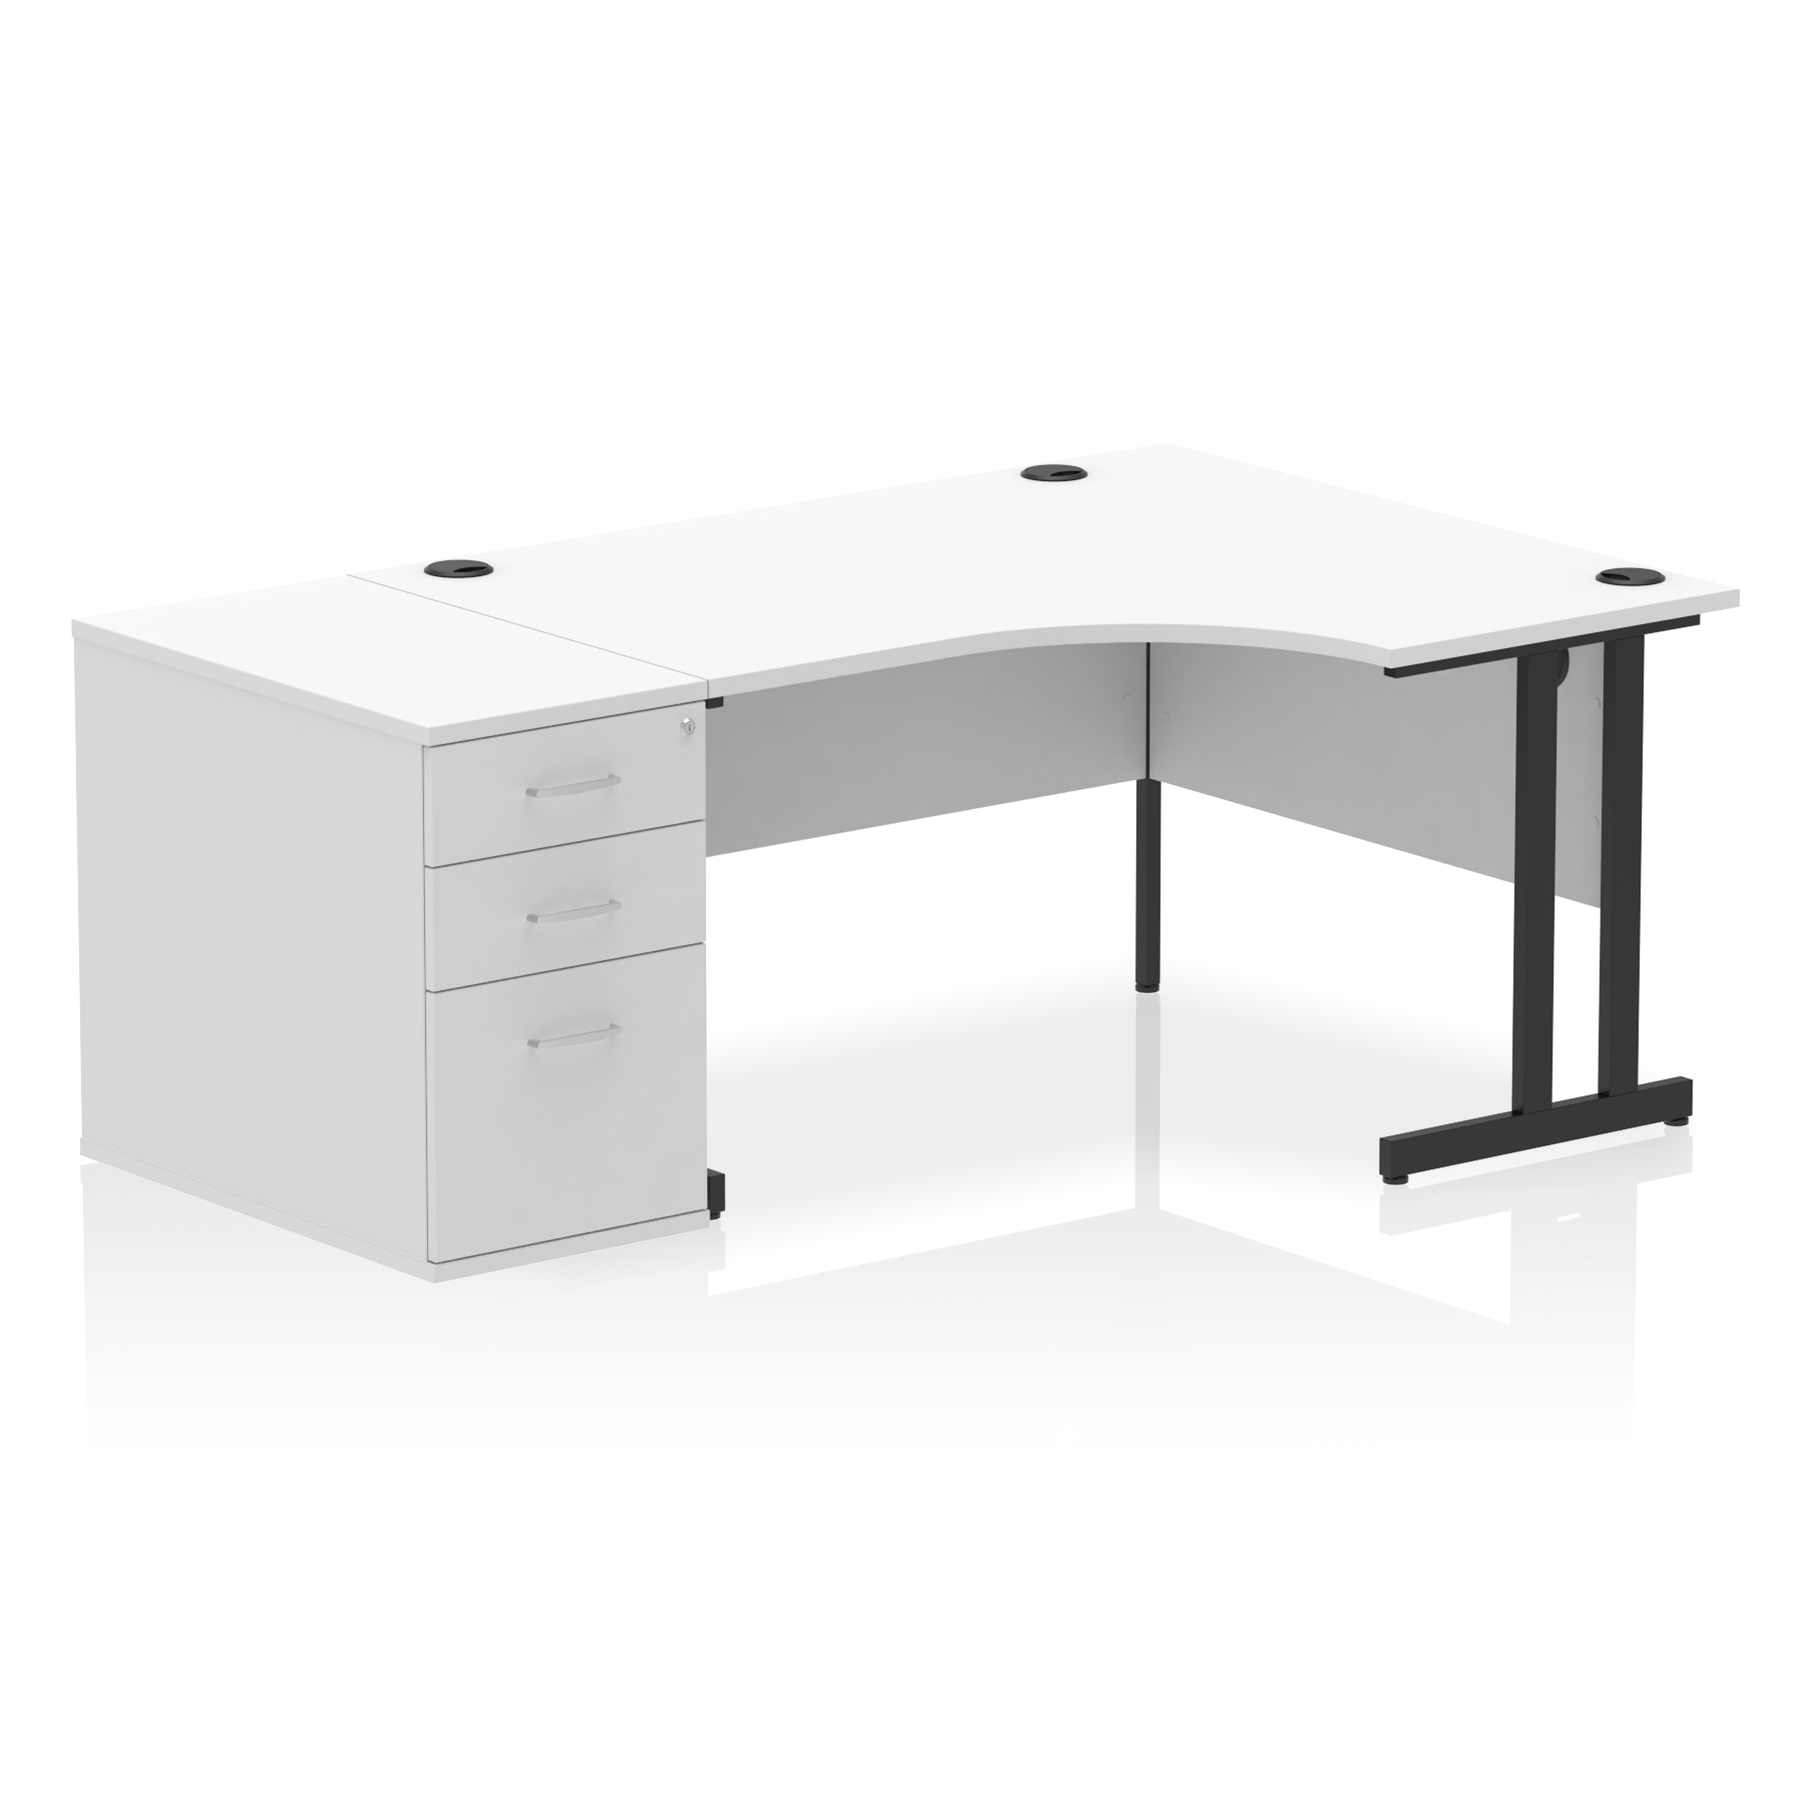 Impulse 1400mm Cantilever Right Crescent Desk Workstation